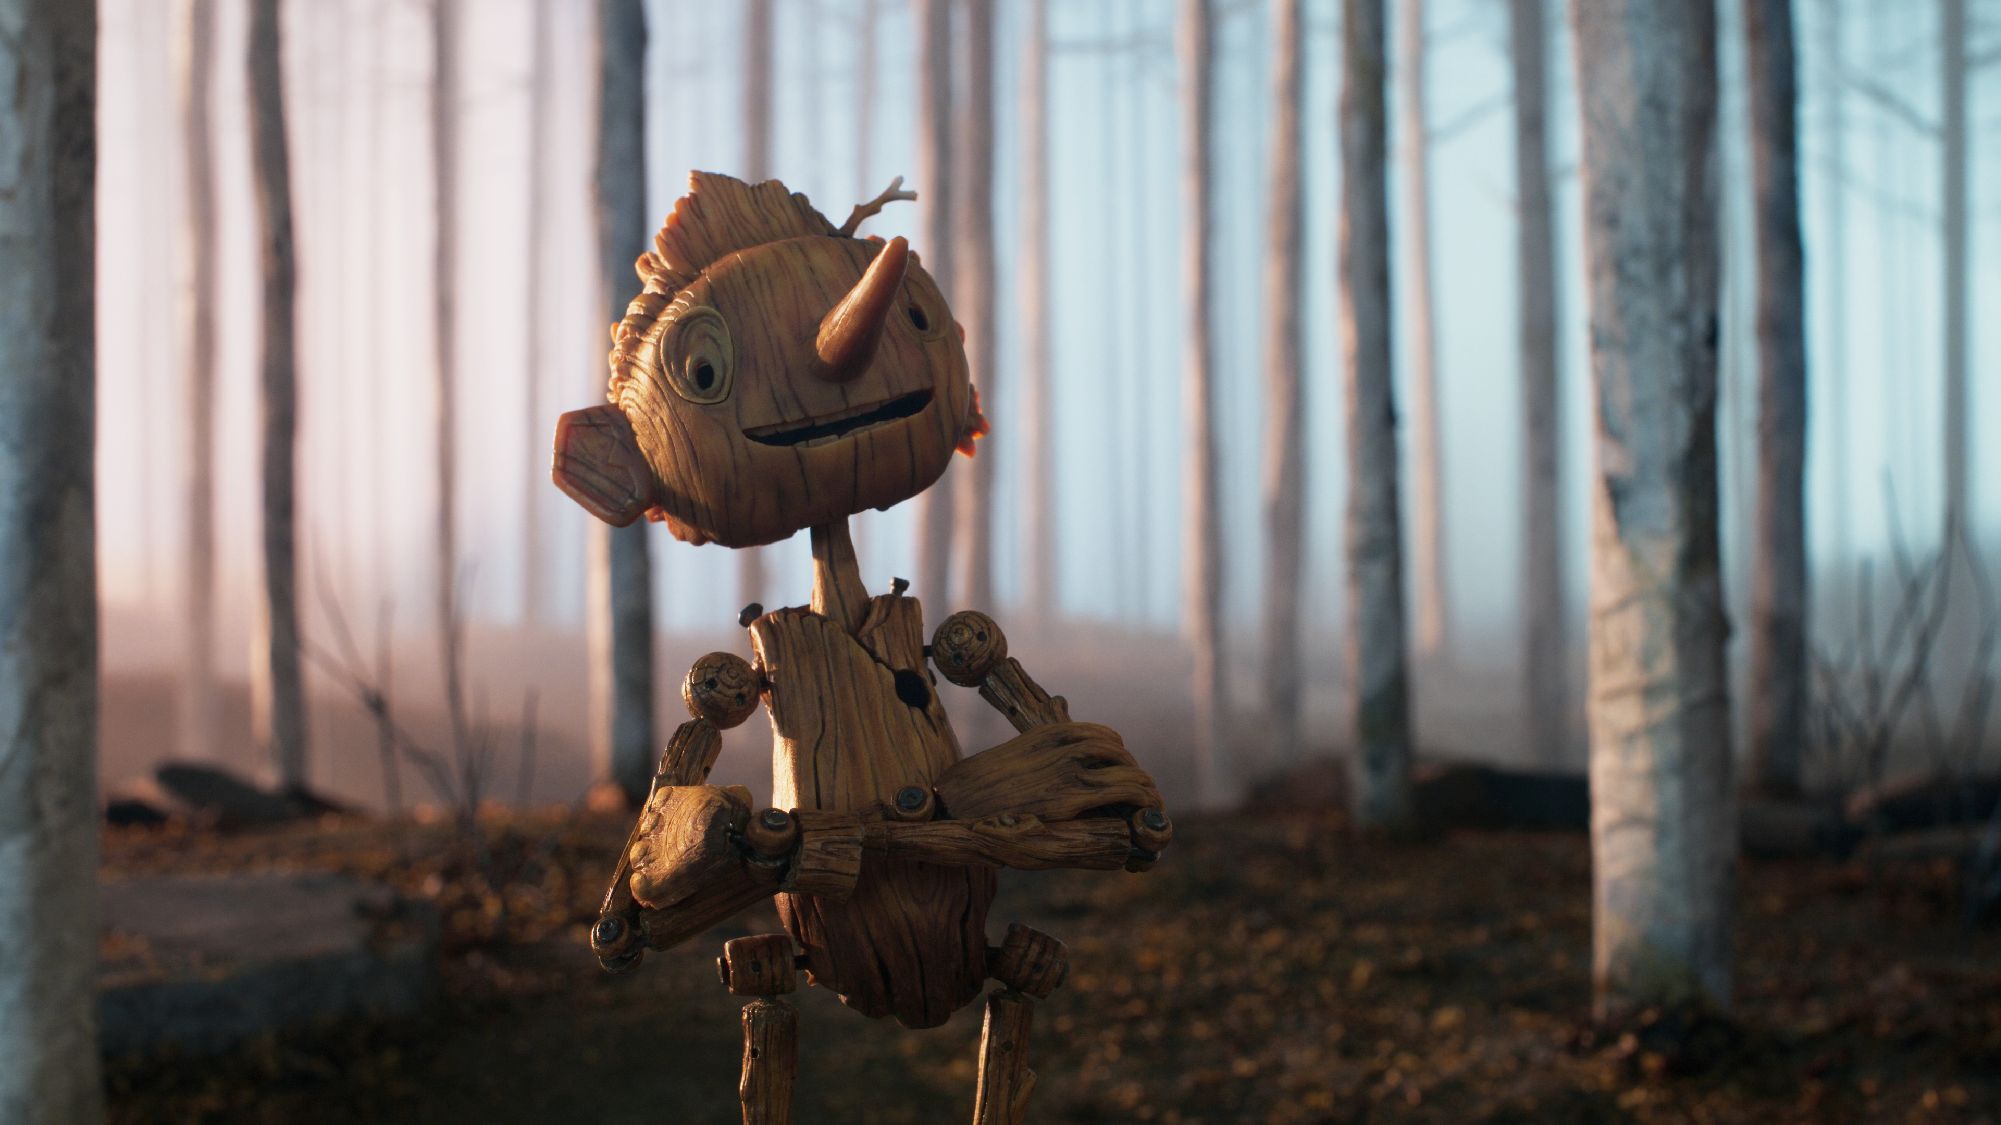 Pinocho se estrenará en cines estadounienses el 12 de diciembre y llegará al gigante del streaming, Netflix.
(Netflix)